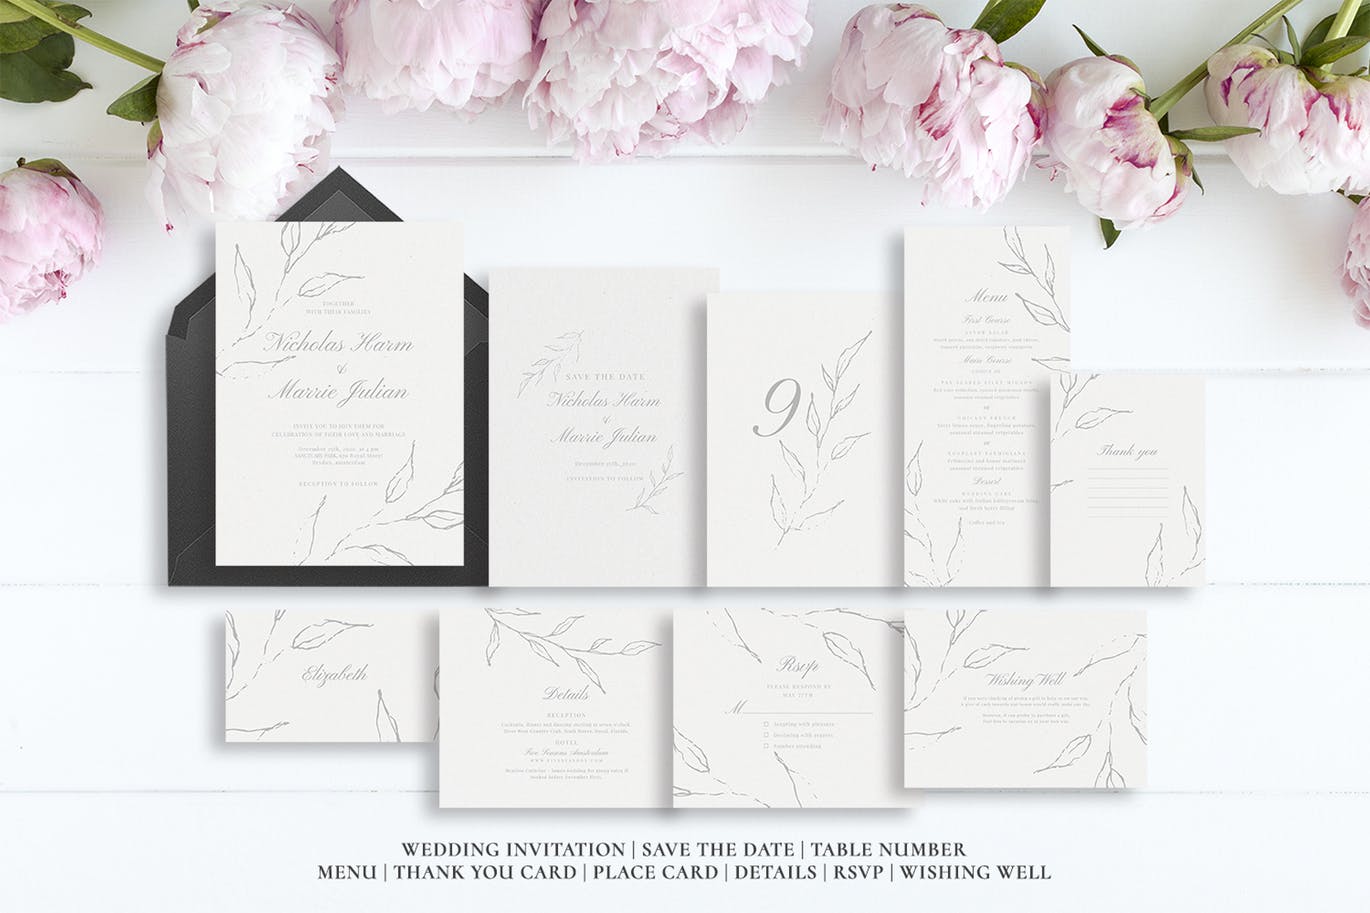 优雅手绘花卉图案婚礼主题设计素材包 Elegant Floral Wedding Suite插图(5)